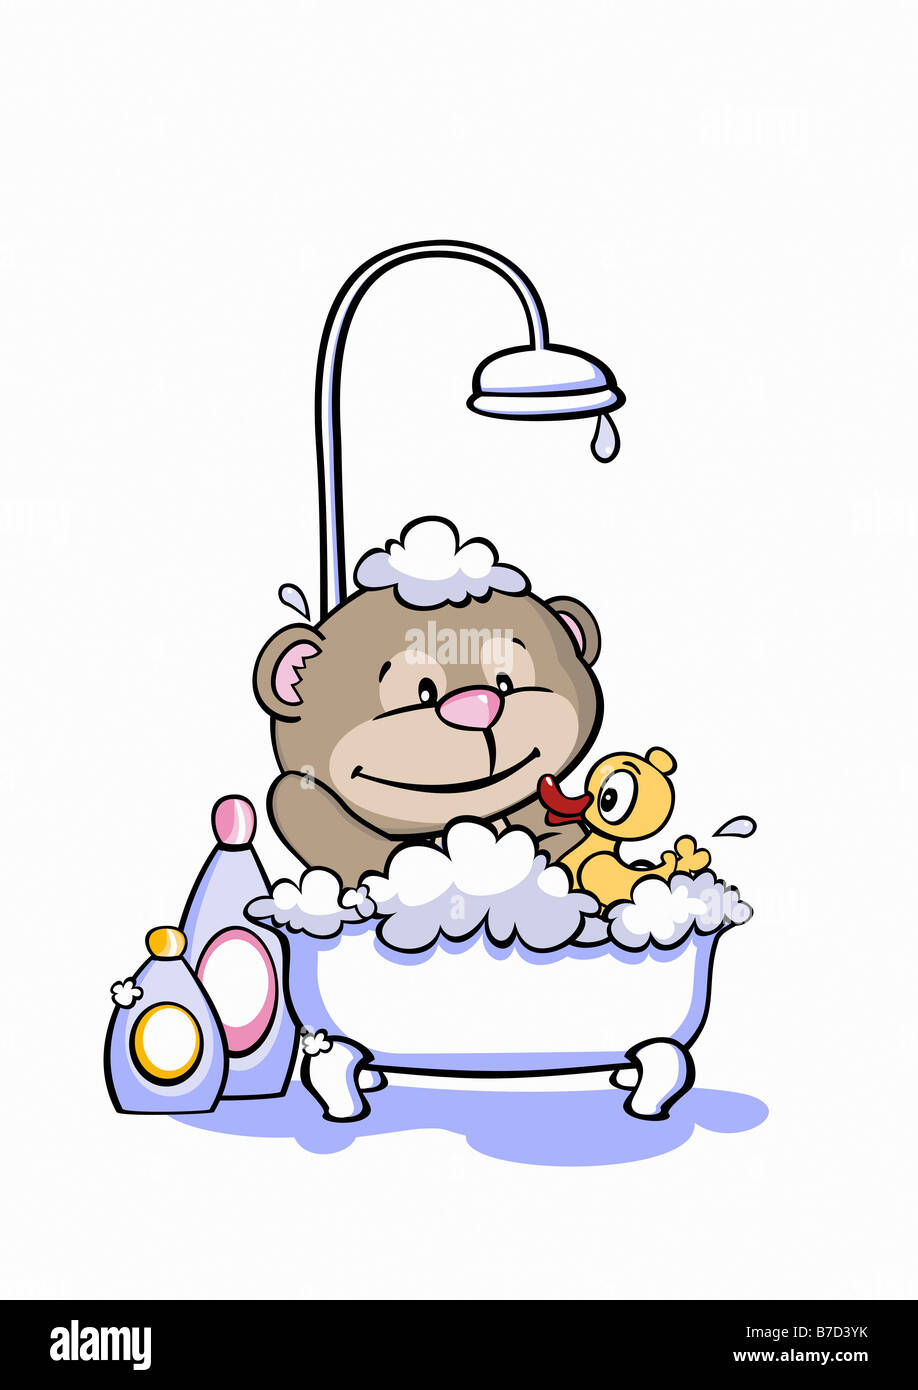 A cartoon bear having a bath Stock Photo